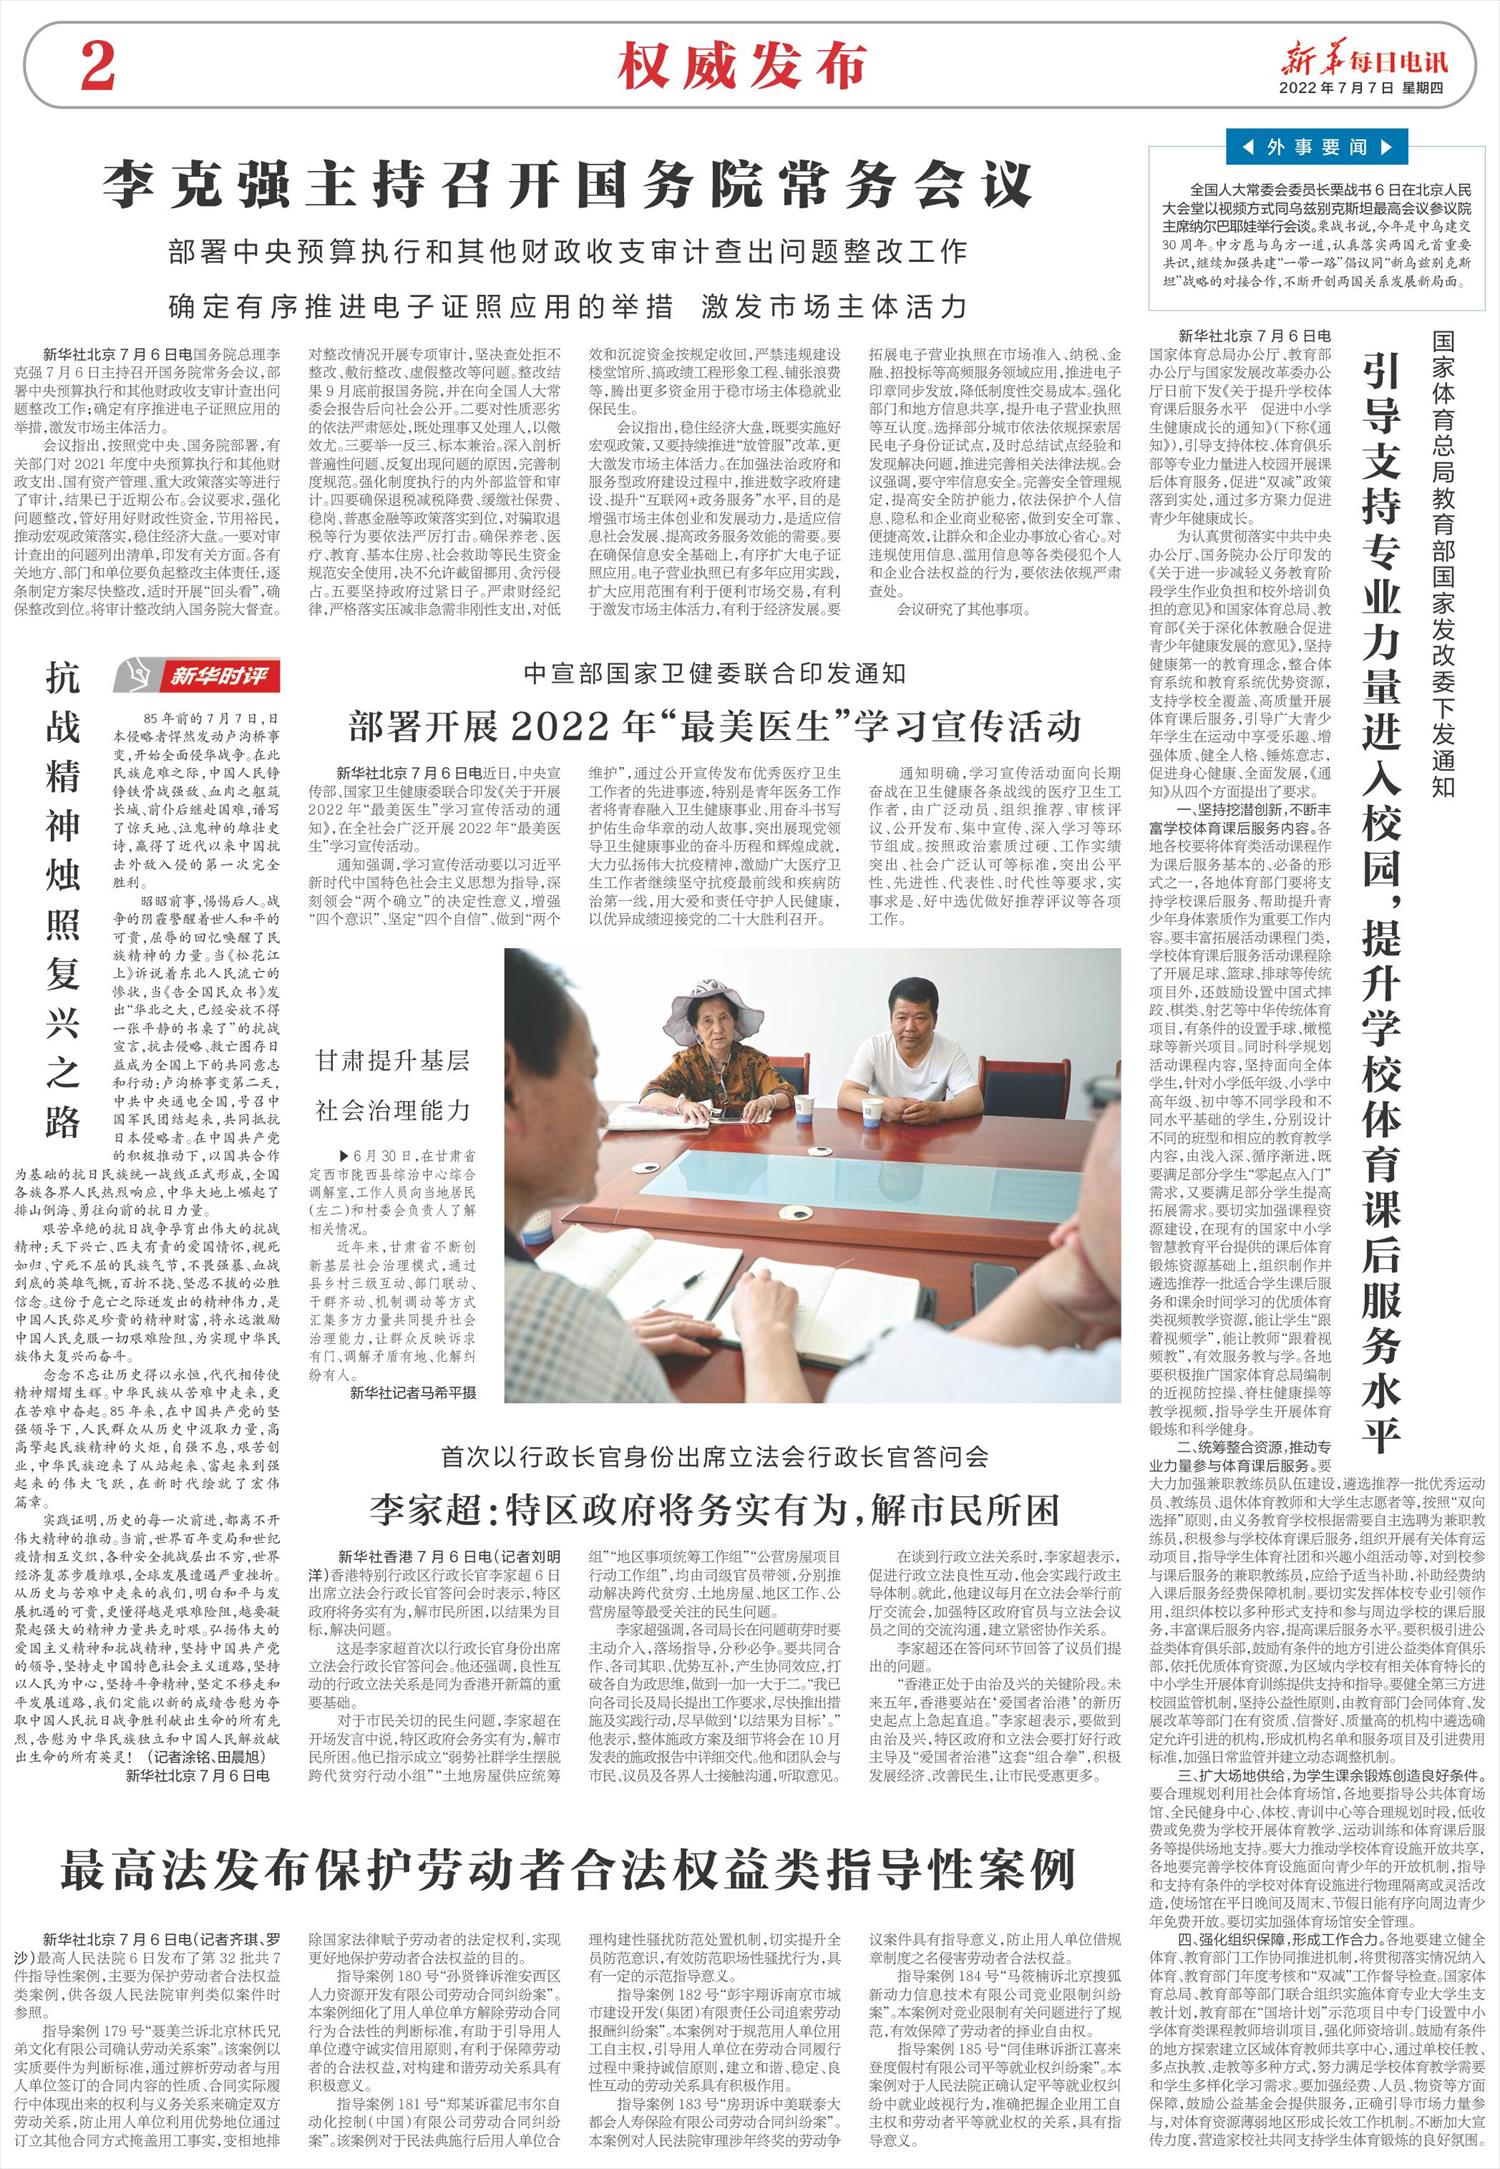 新华每日电讯-微报纸-2022年07月07日